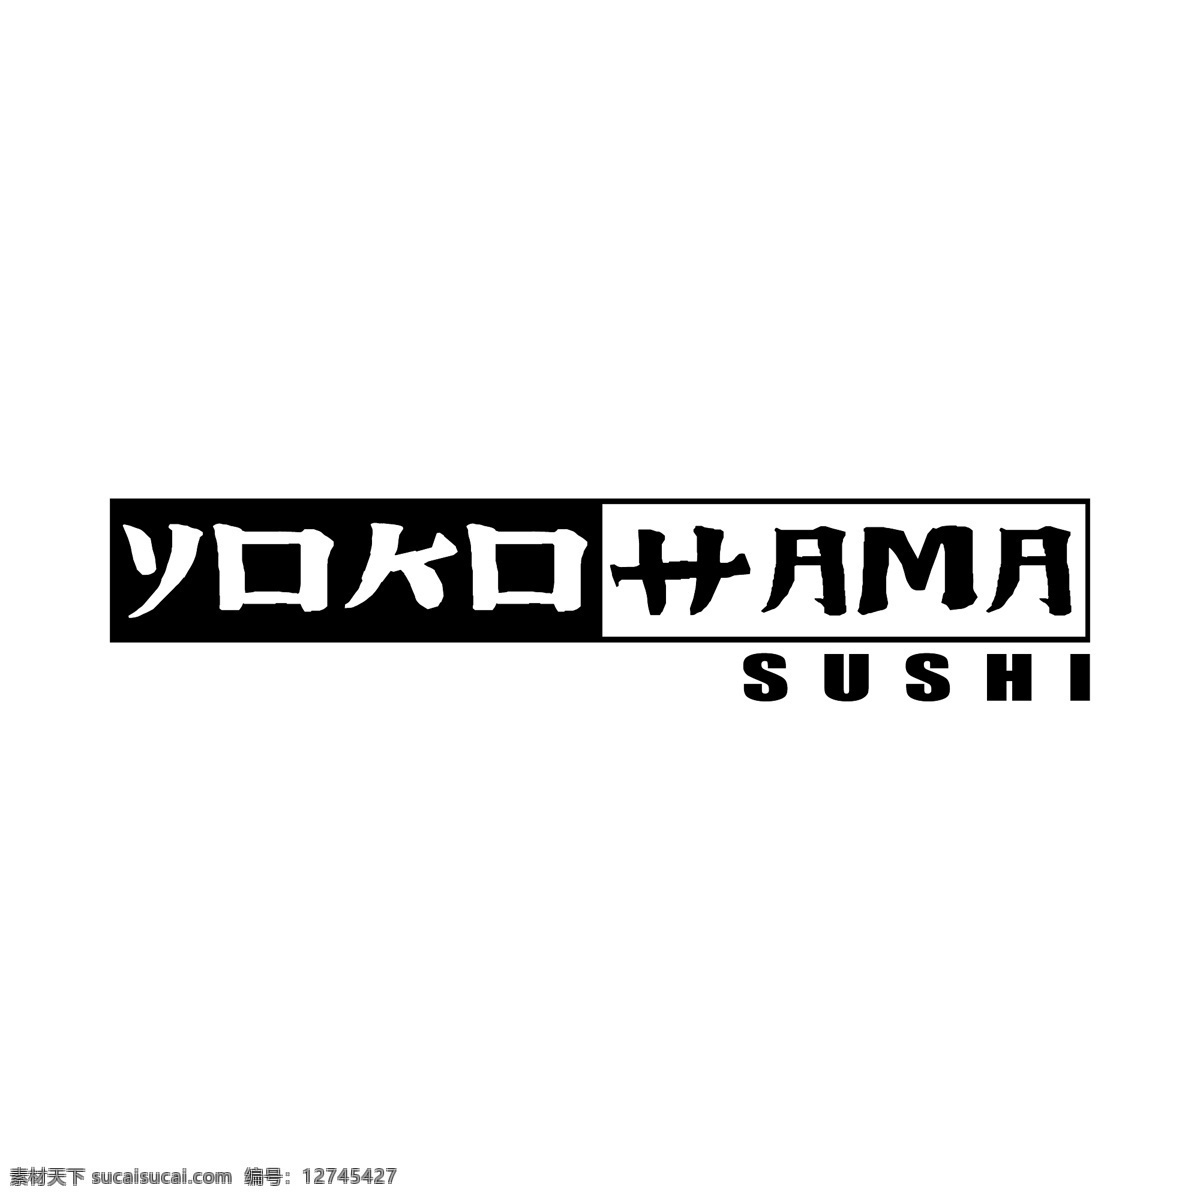 横滨 寿司 标识 公司 免费 品牌 品牌标识 商标 矢量标志下载 免费矢量标识 矢量 psd源文件 logo设计